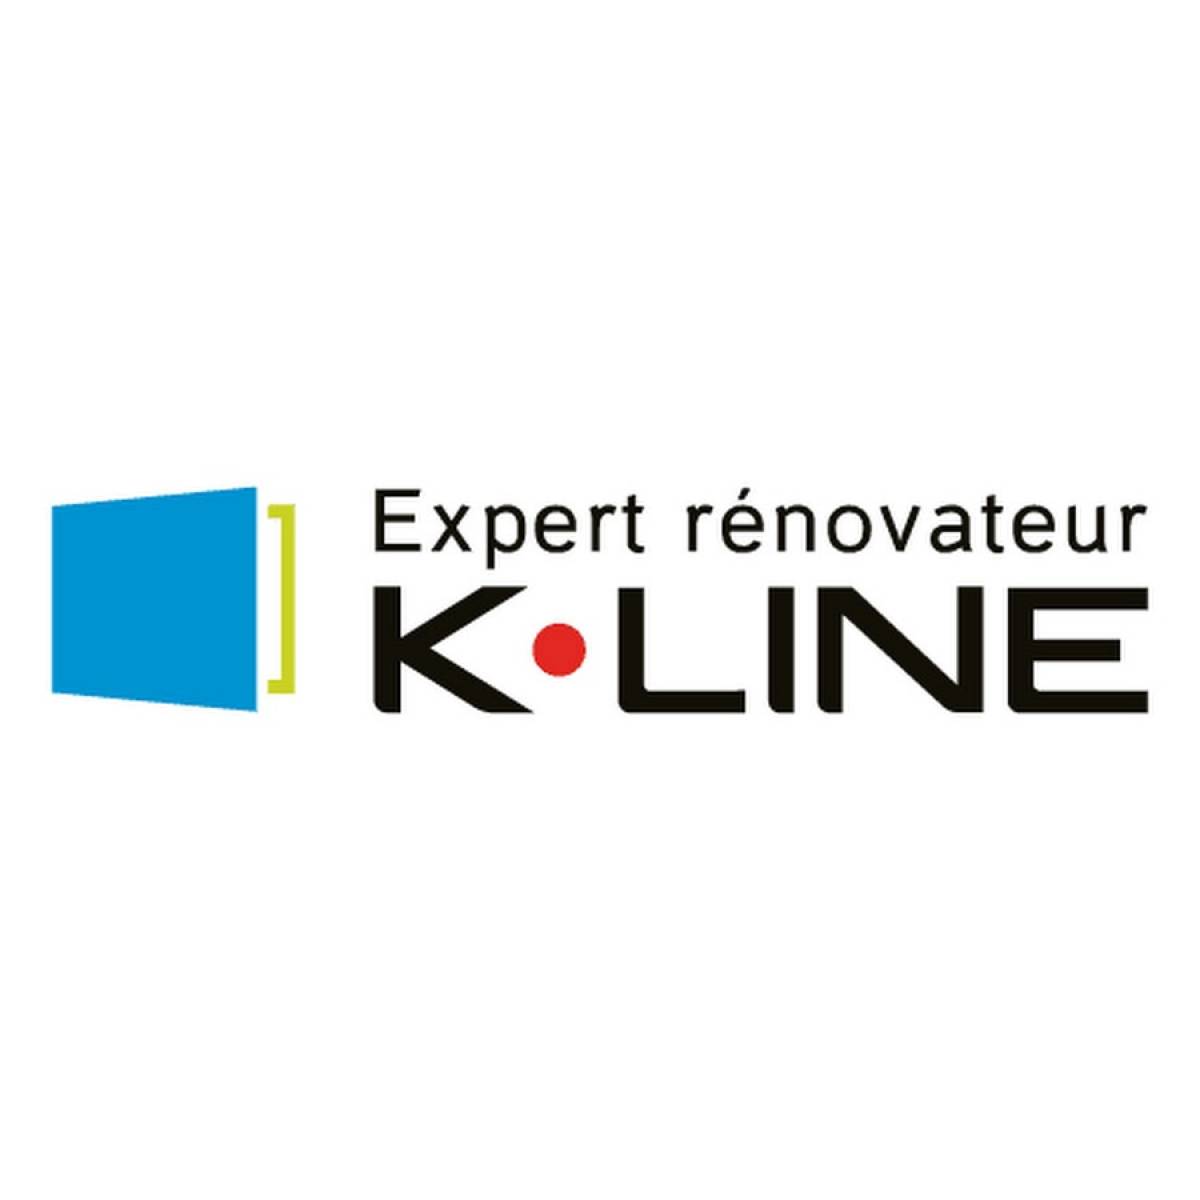 K-line, une entreprise française en pleine croissance